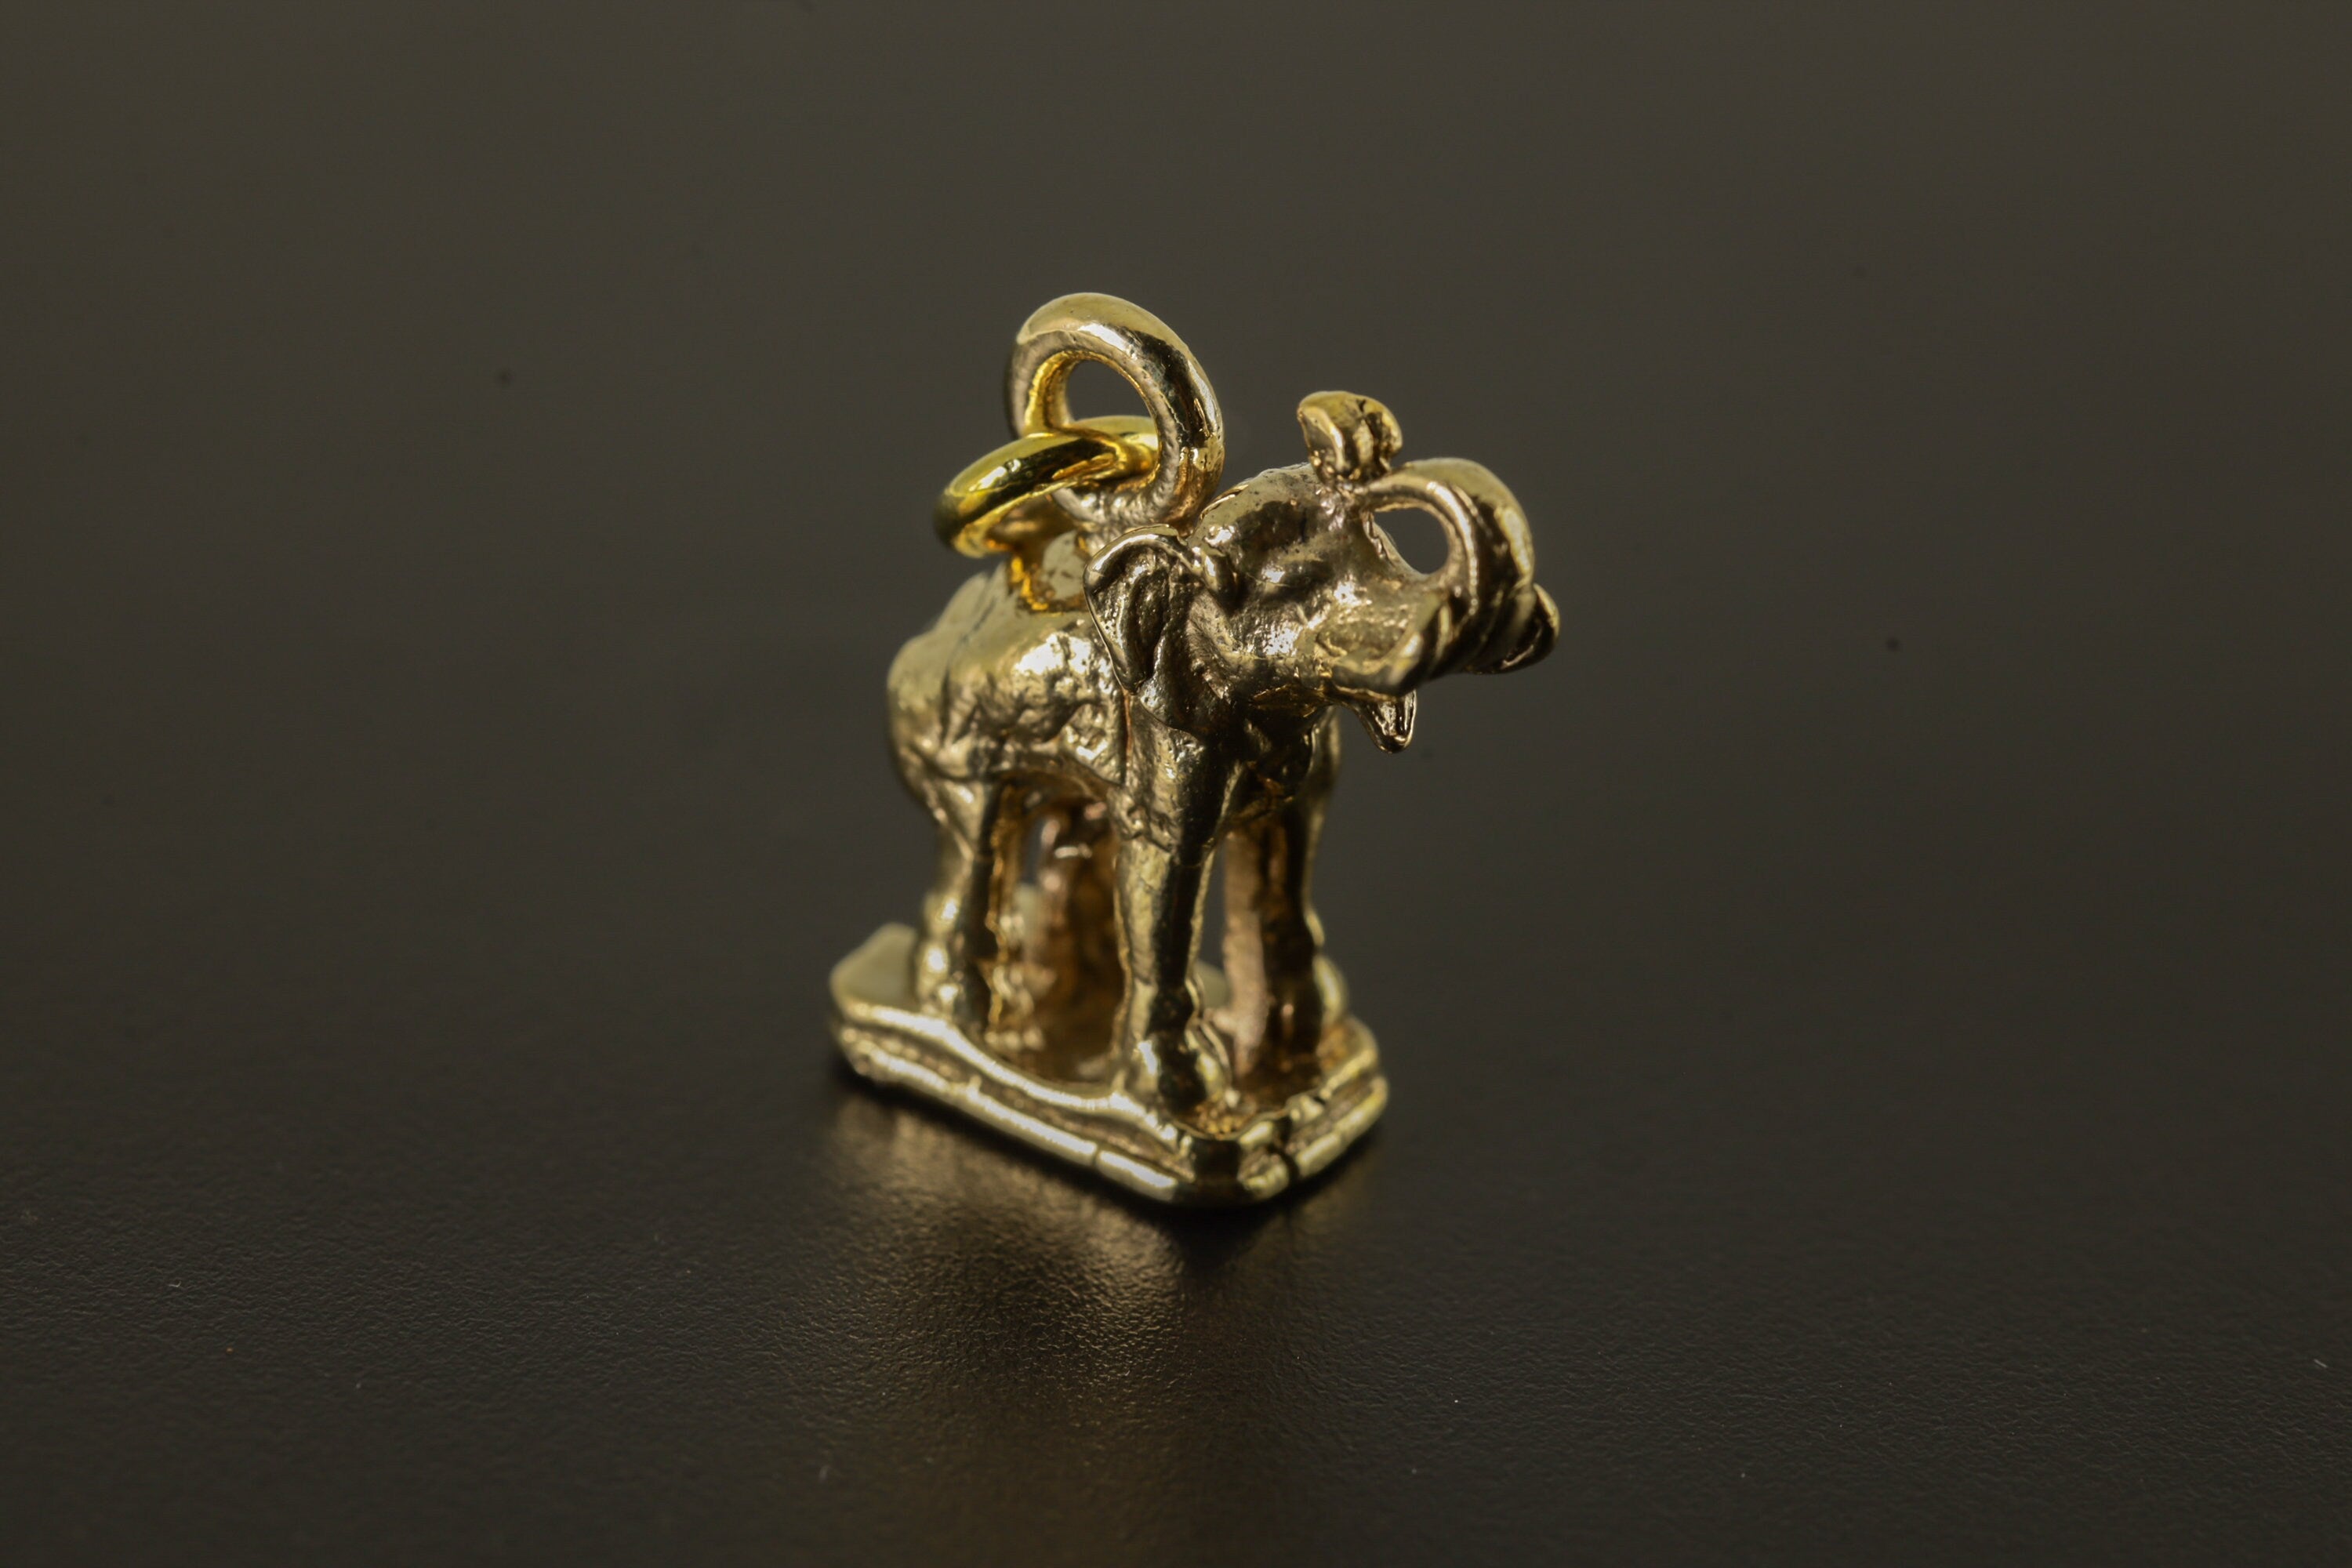 Aurelian Tusker Amulet - Gold Plated Brass Cast - Pendant Necklace